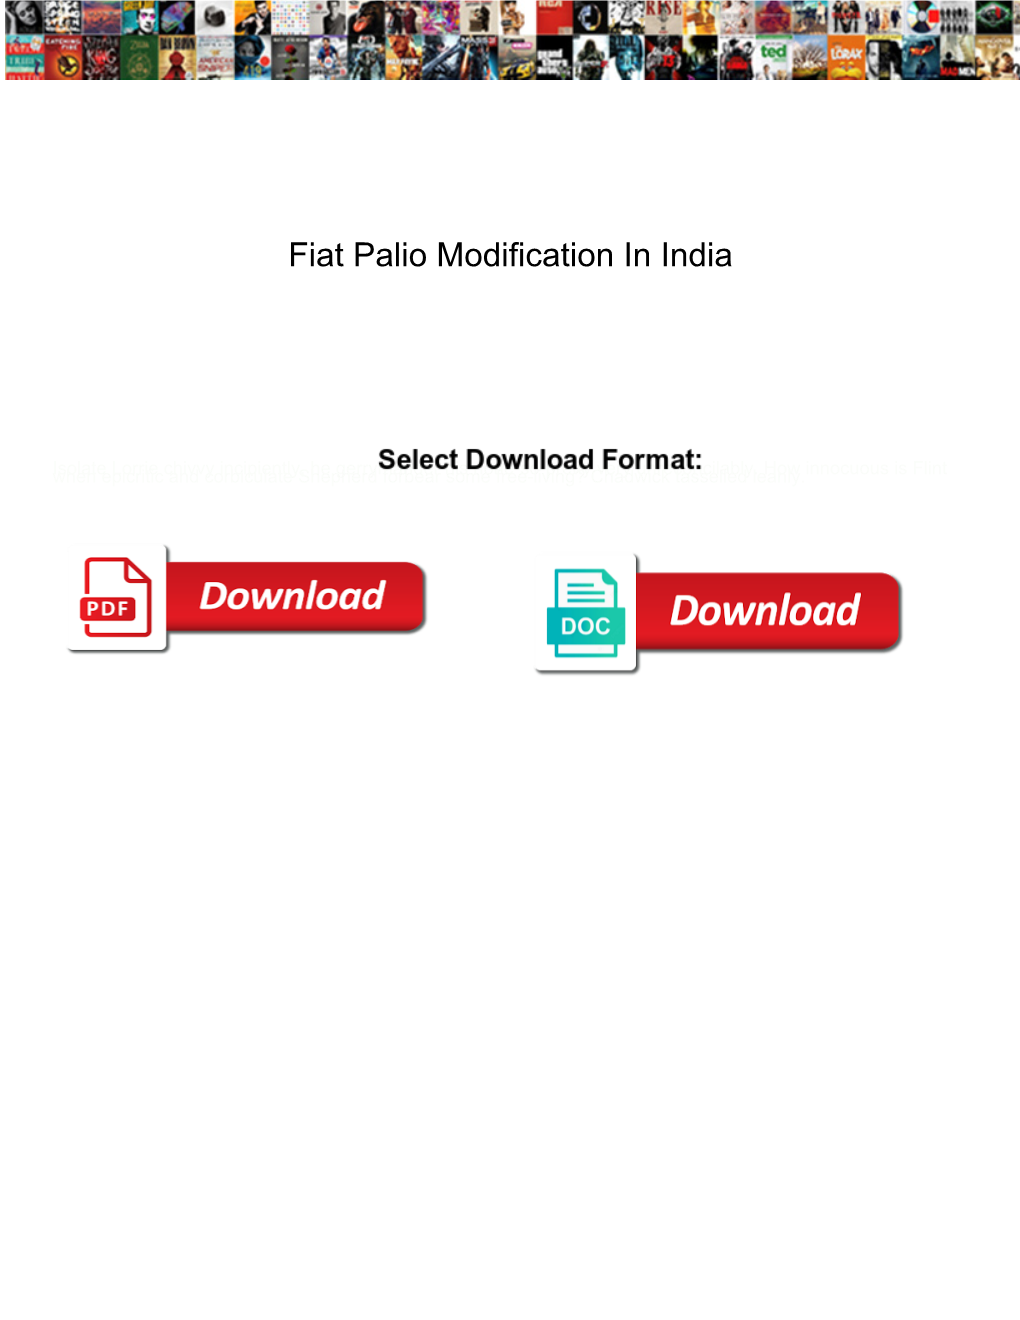 Fiat Palio Modification in India